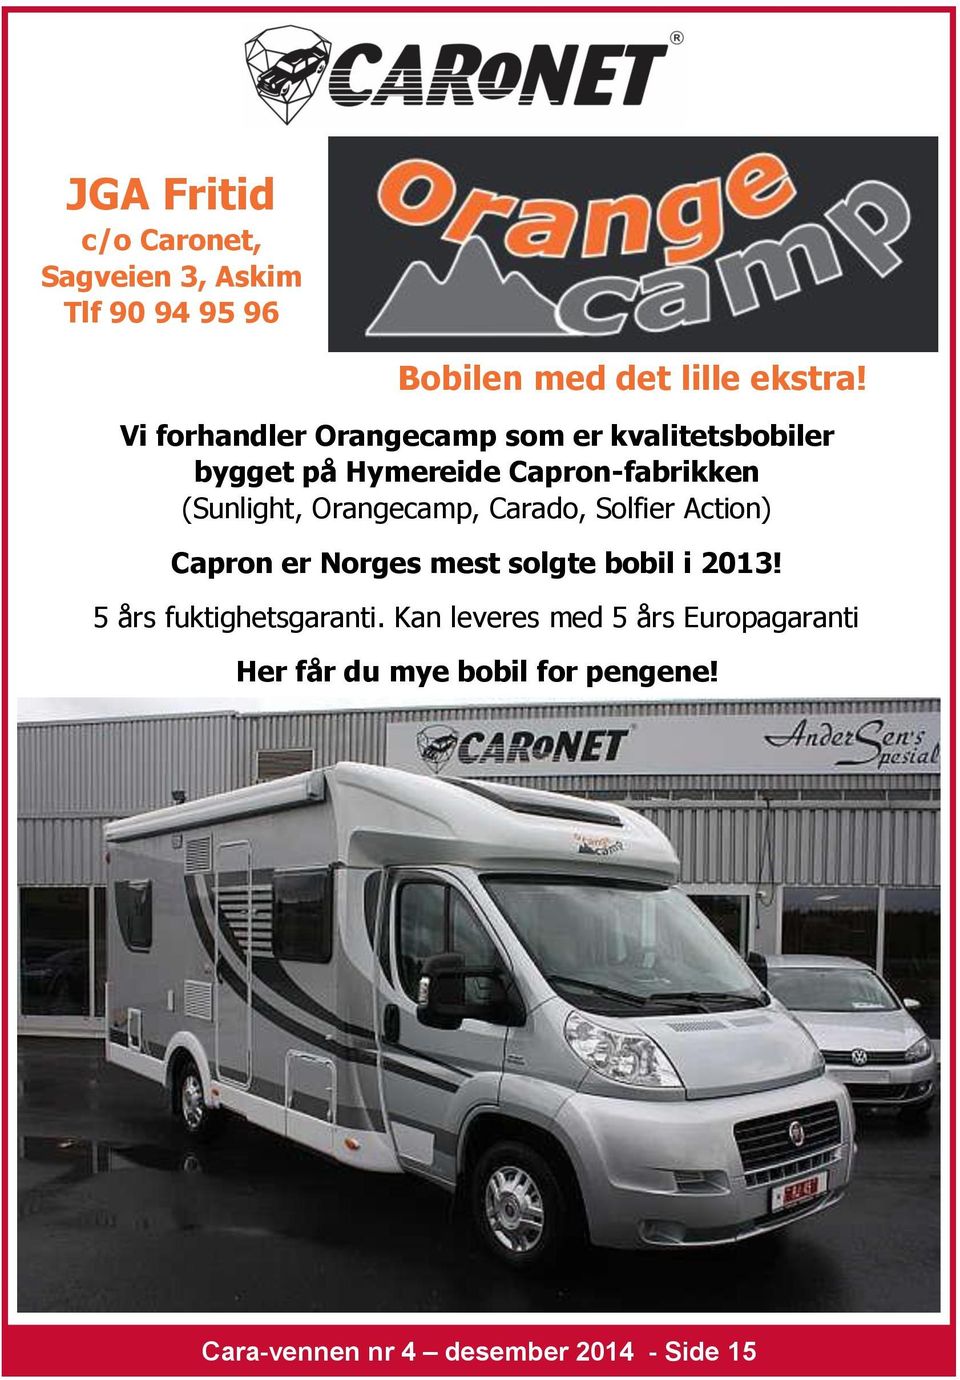 Orangecamp, Carado, Solfier Action) Capron er Norges mest solgte bobil i 2013!